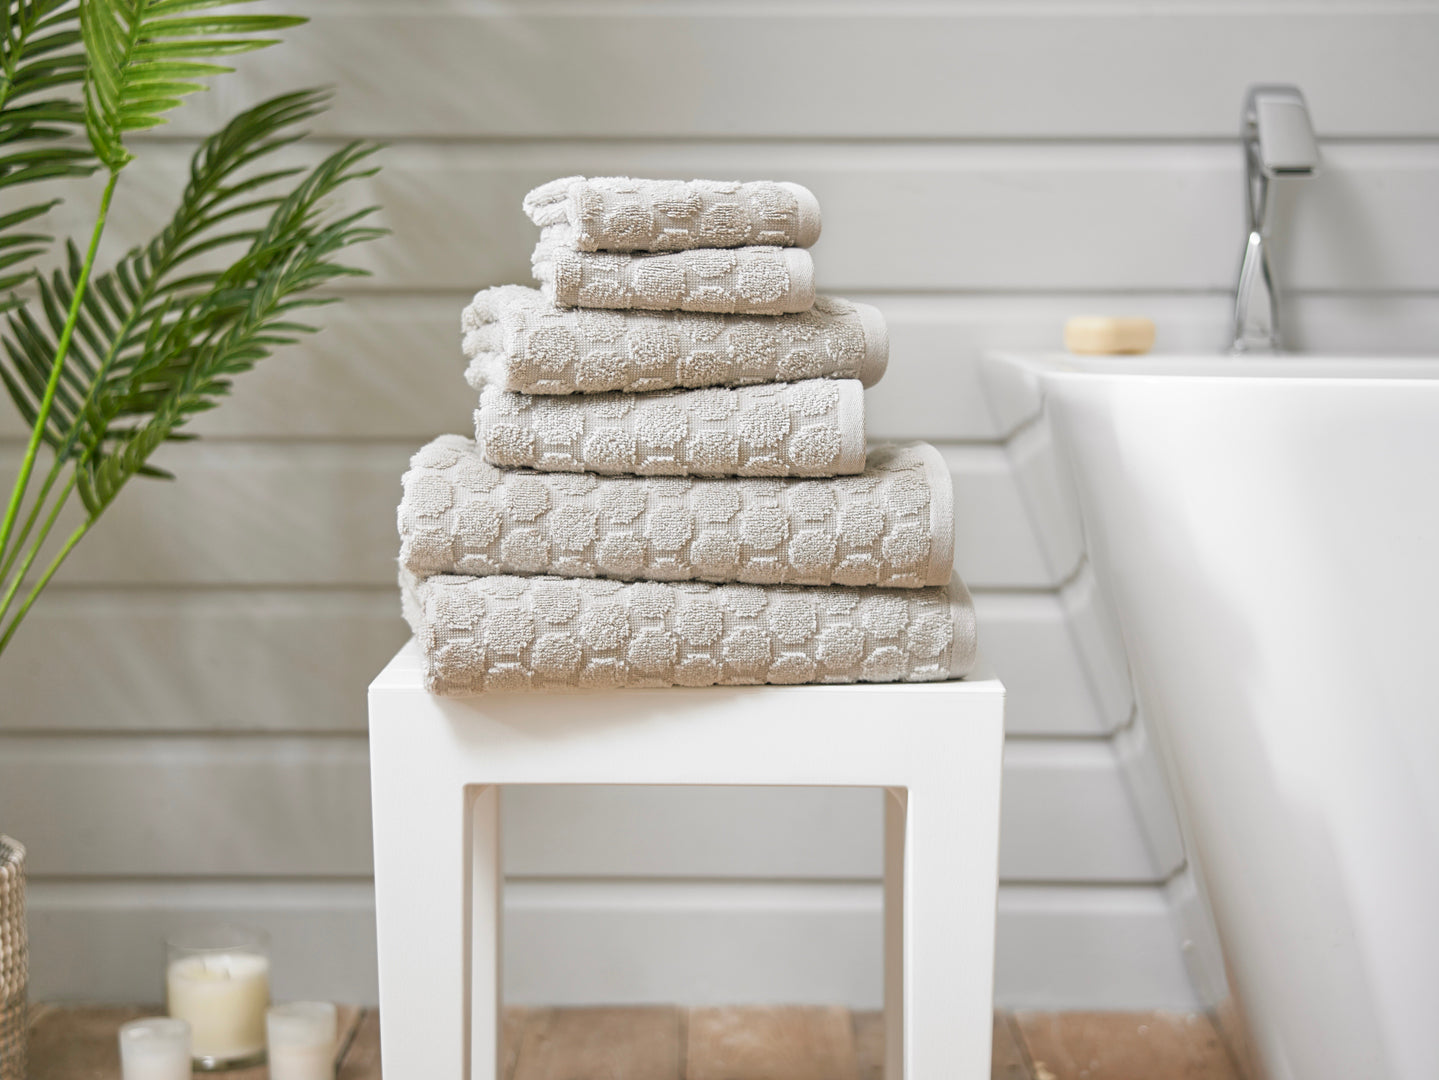 Sierra Quik Dri ® Cotton Towels